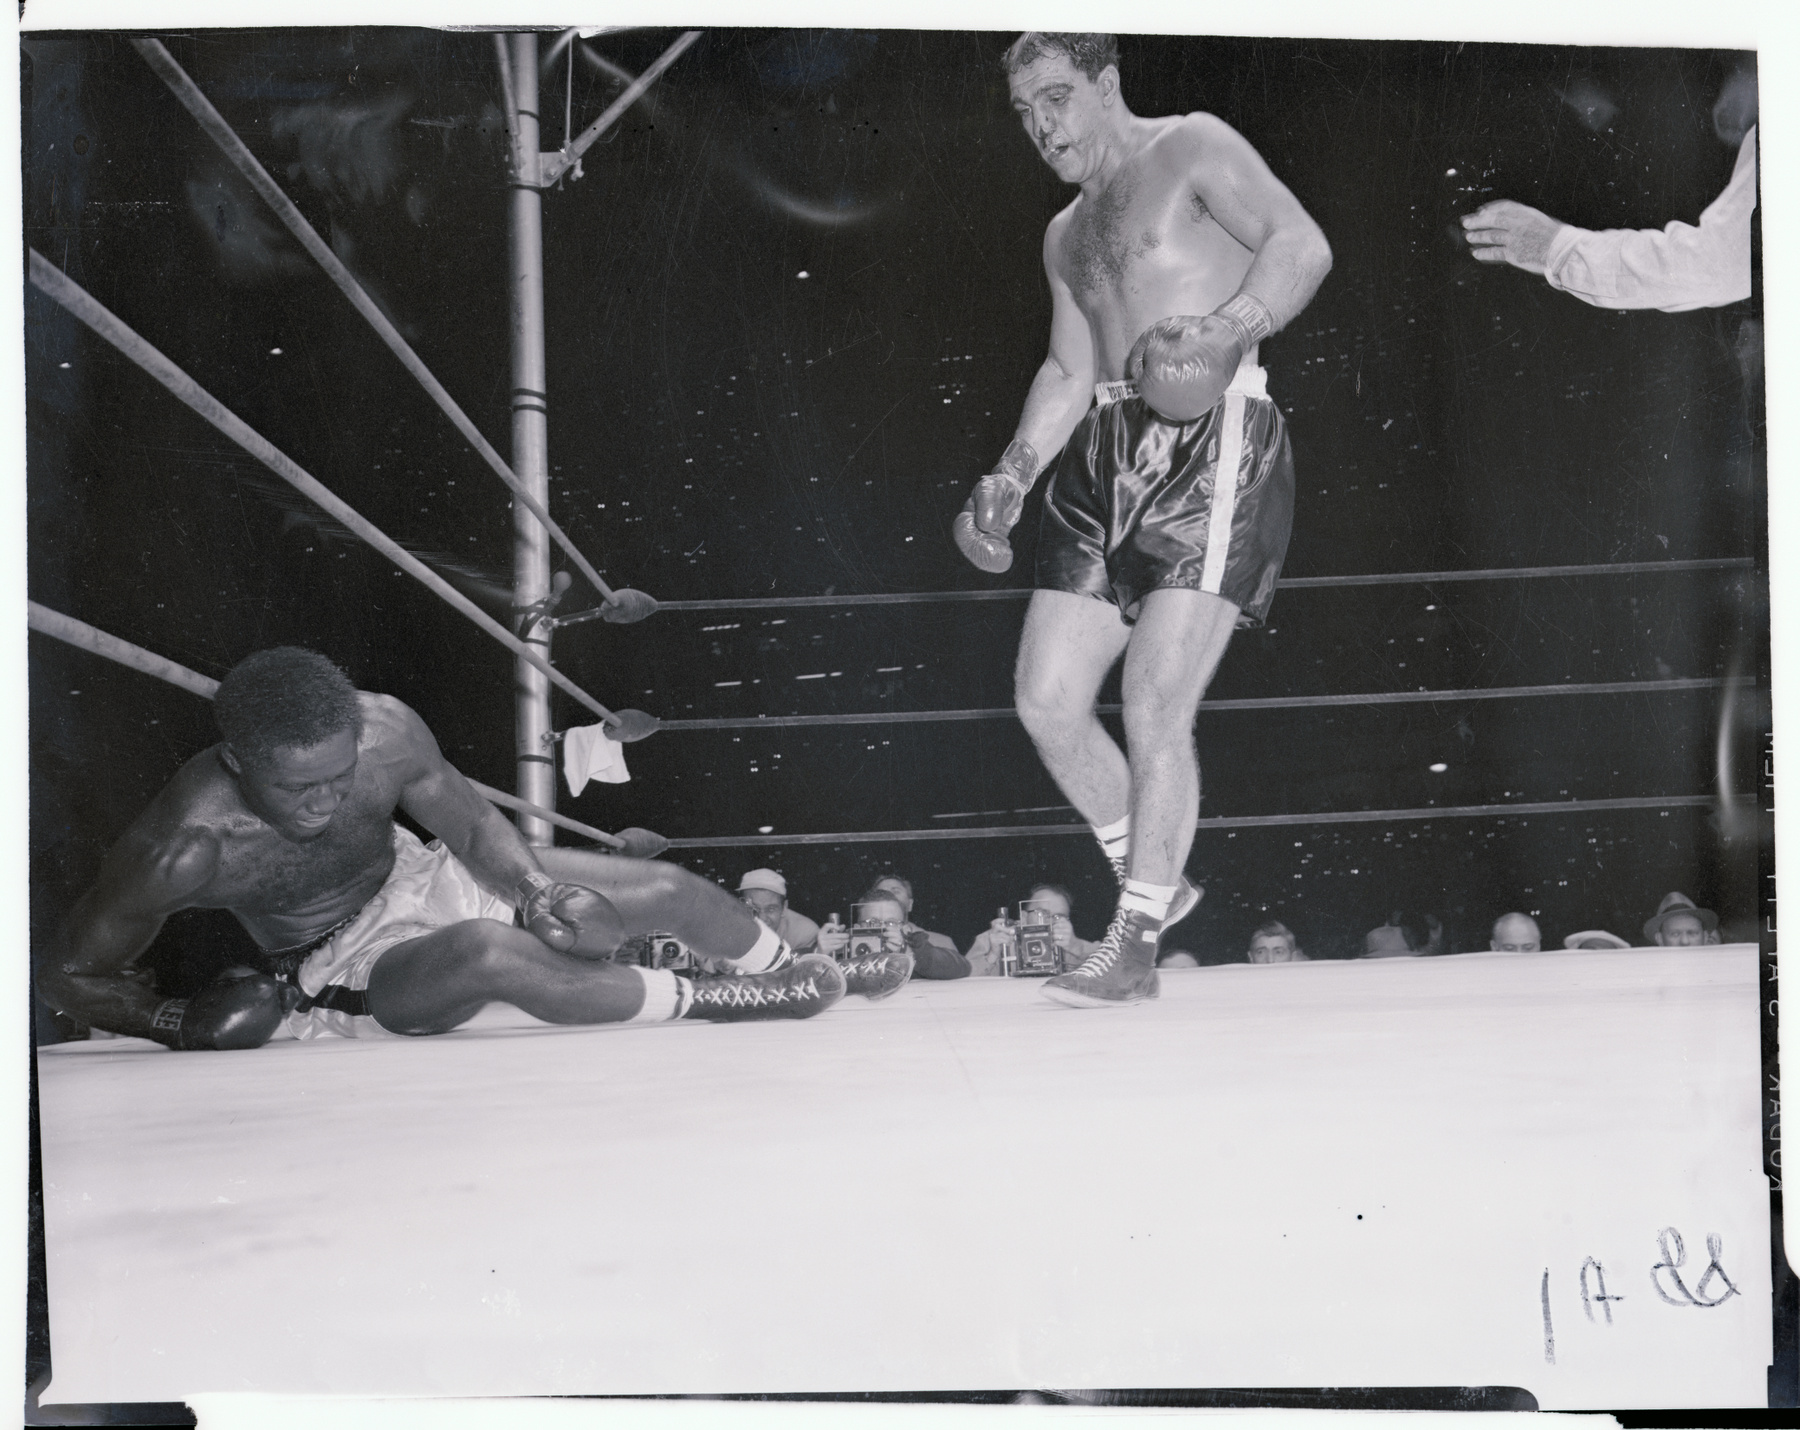 1955 szeptemberében Archie Moore ellen a második menetben Rocky a földre került, rászámoltak, de a kilencedik menetben egy hatalmas ütéssel őt is kivégezte. Hét hónappal később, 1956 áprilisában bejelentette visszavonulását.